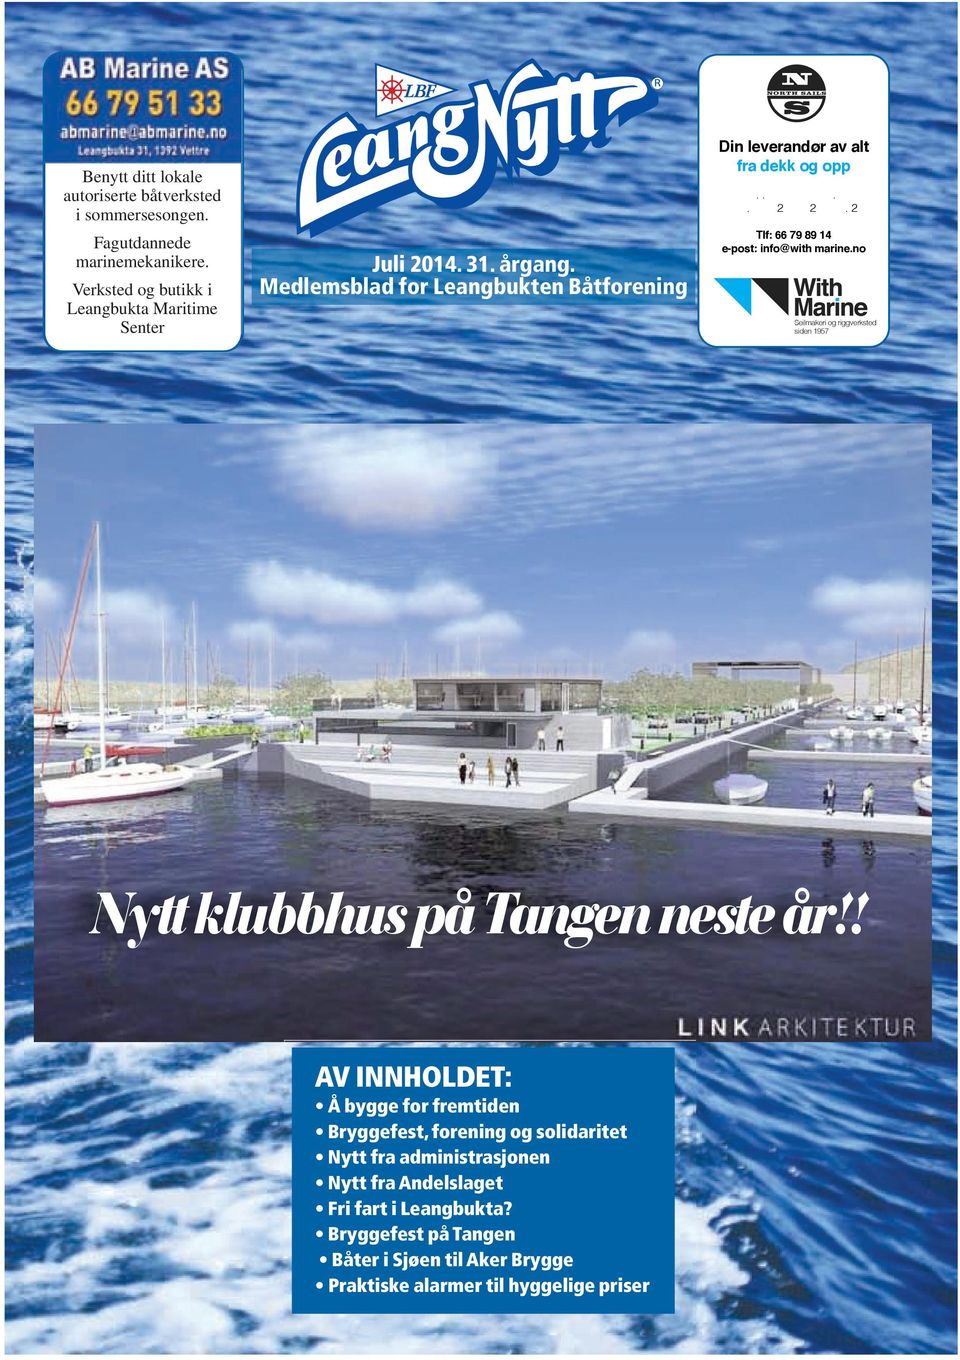 Juli årgang. Medlemsblad for Leangbukten Båtforening - PDF Gratis nedlasting